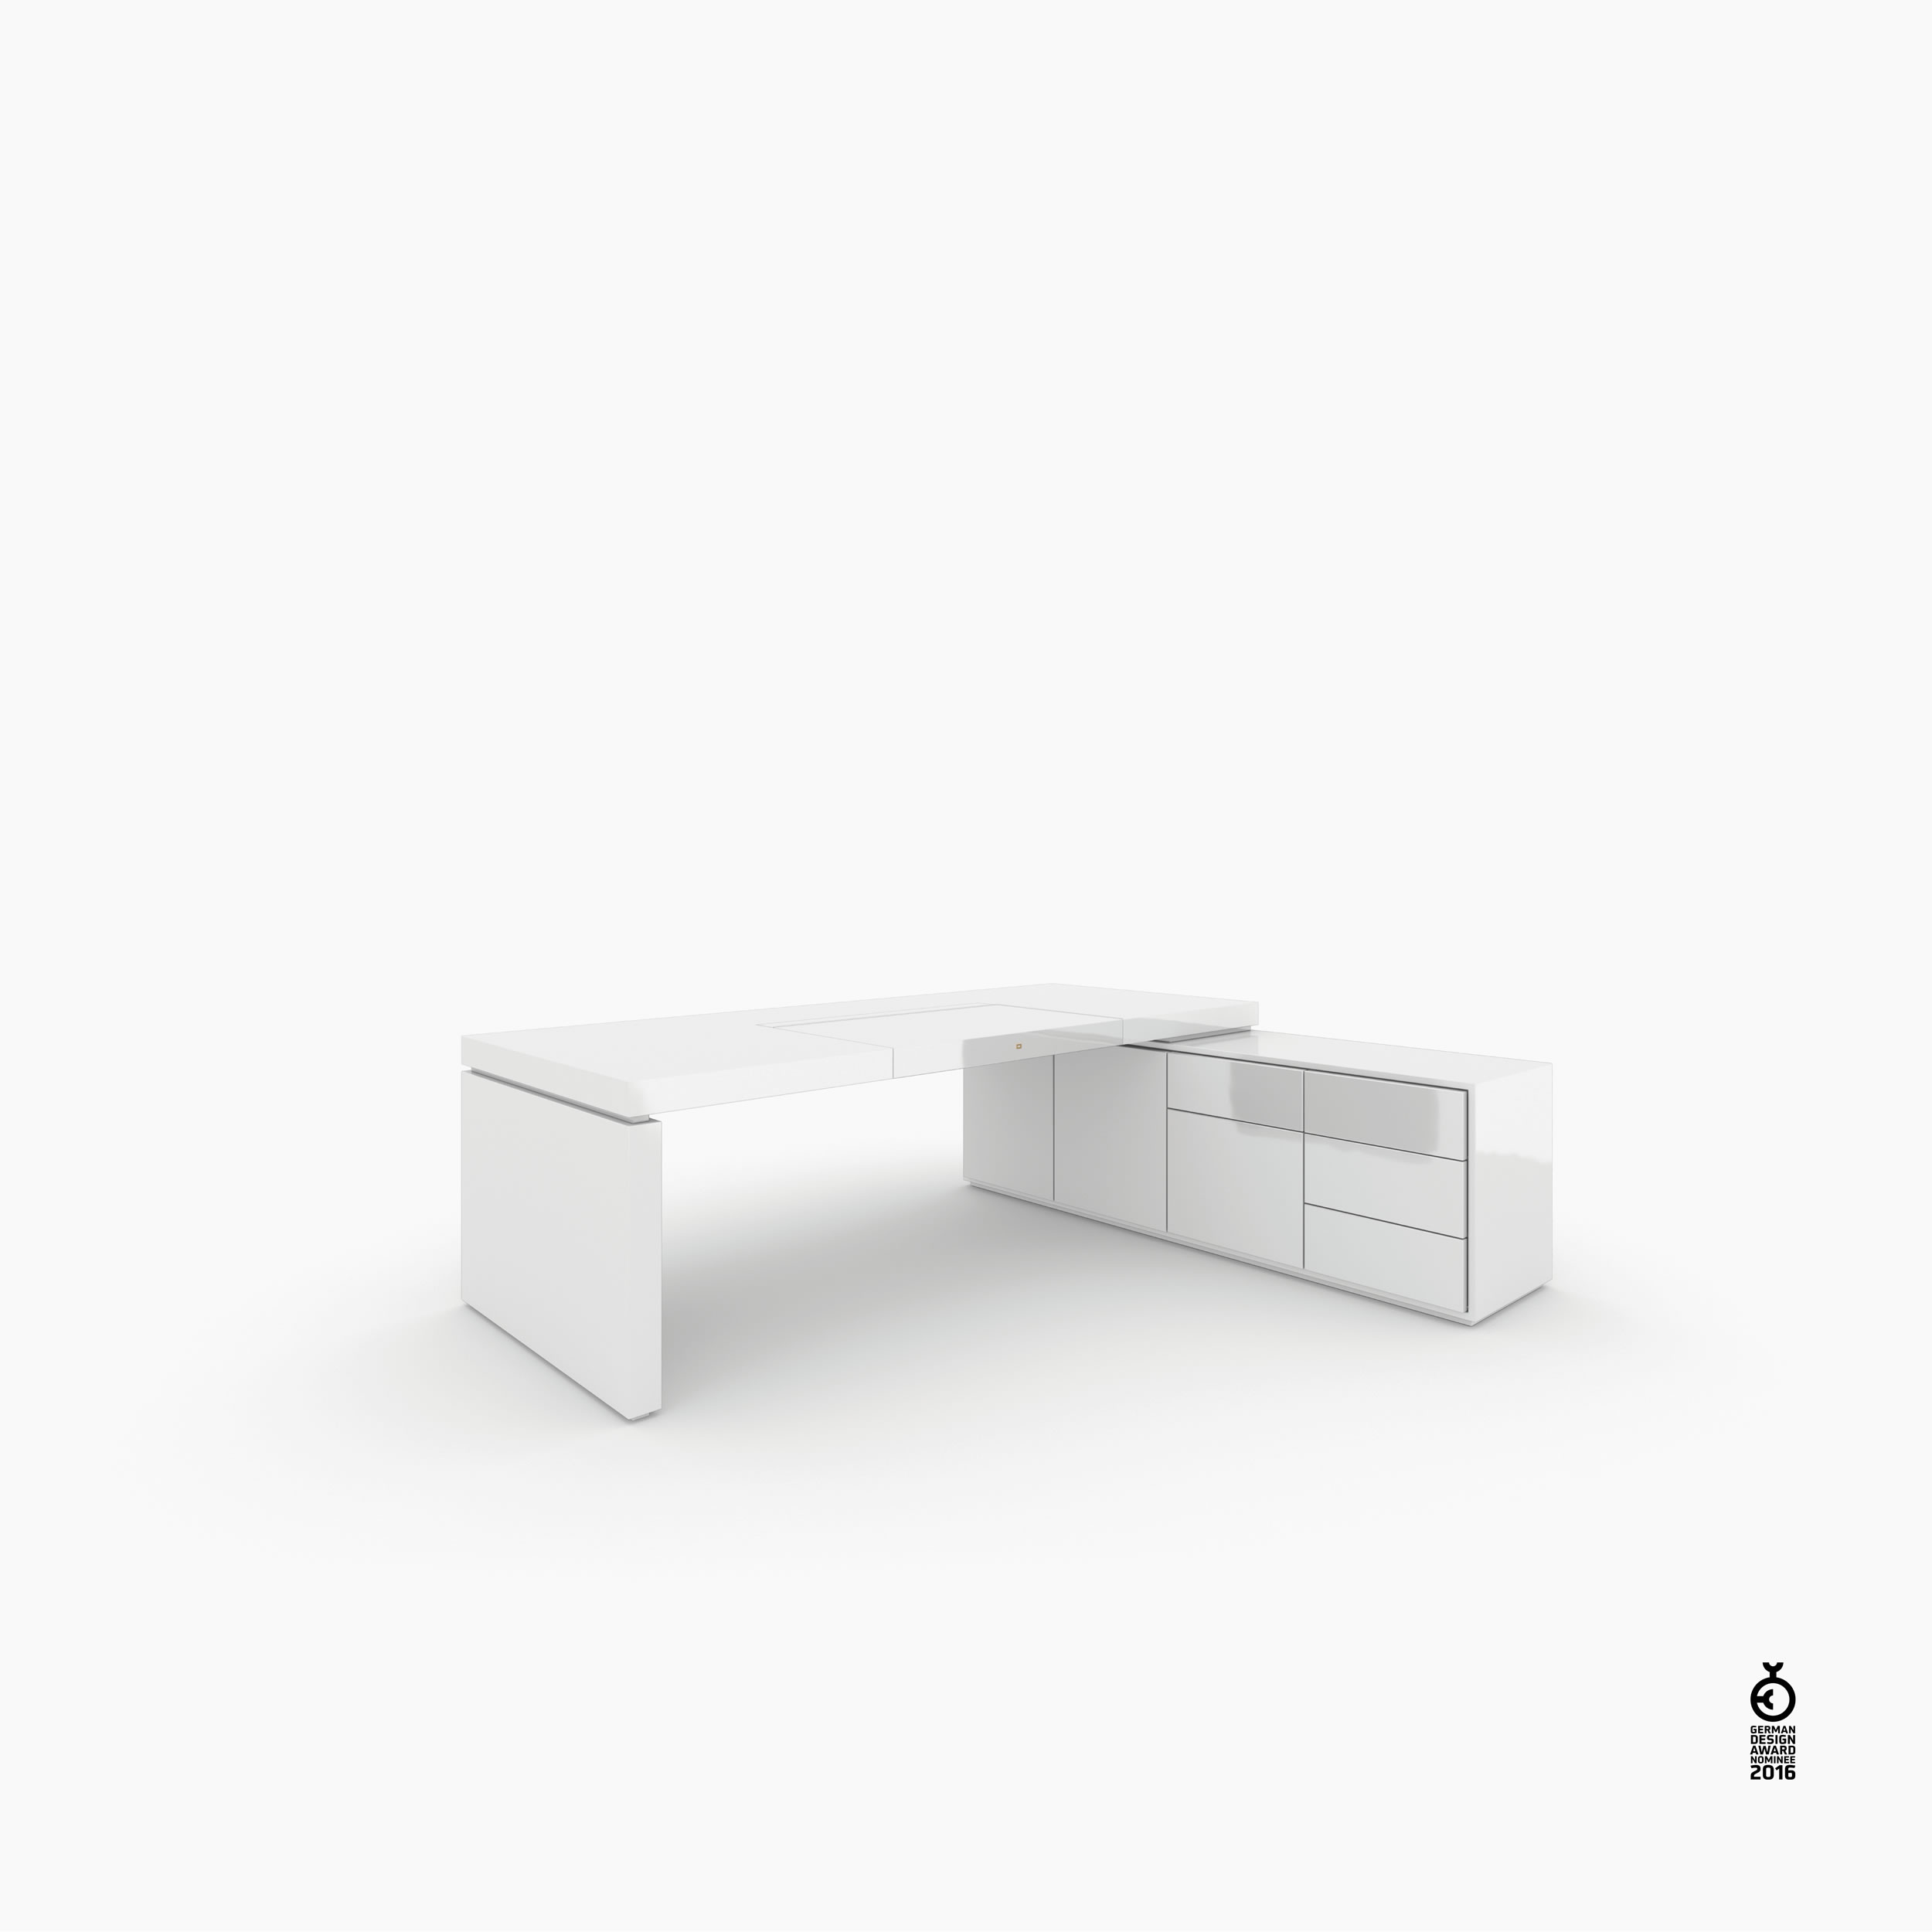 Schreibtisch scheiben und quader weiss white furniture Chefzimmer bespokedesign Schreibtische FS 94 FELIX SCHWAKE